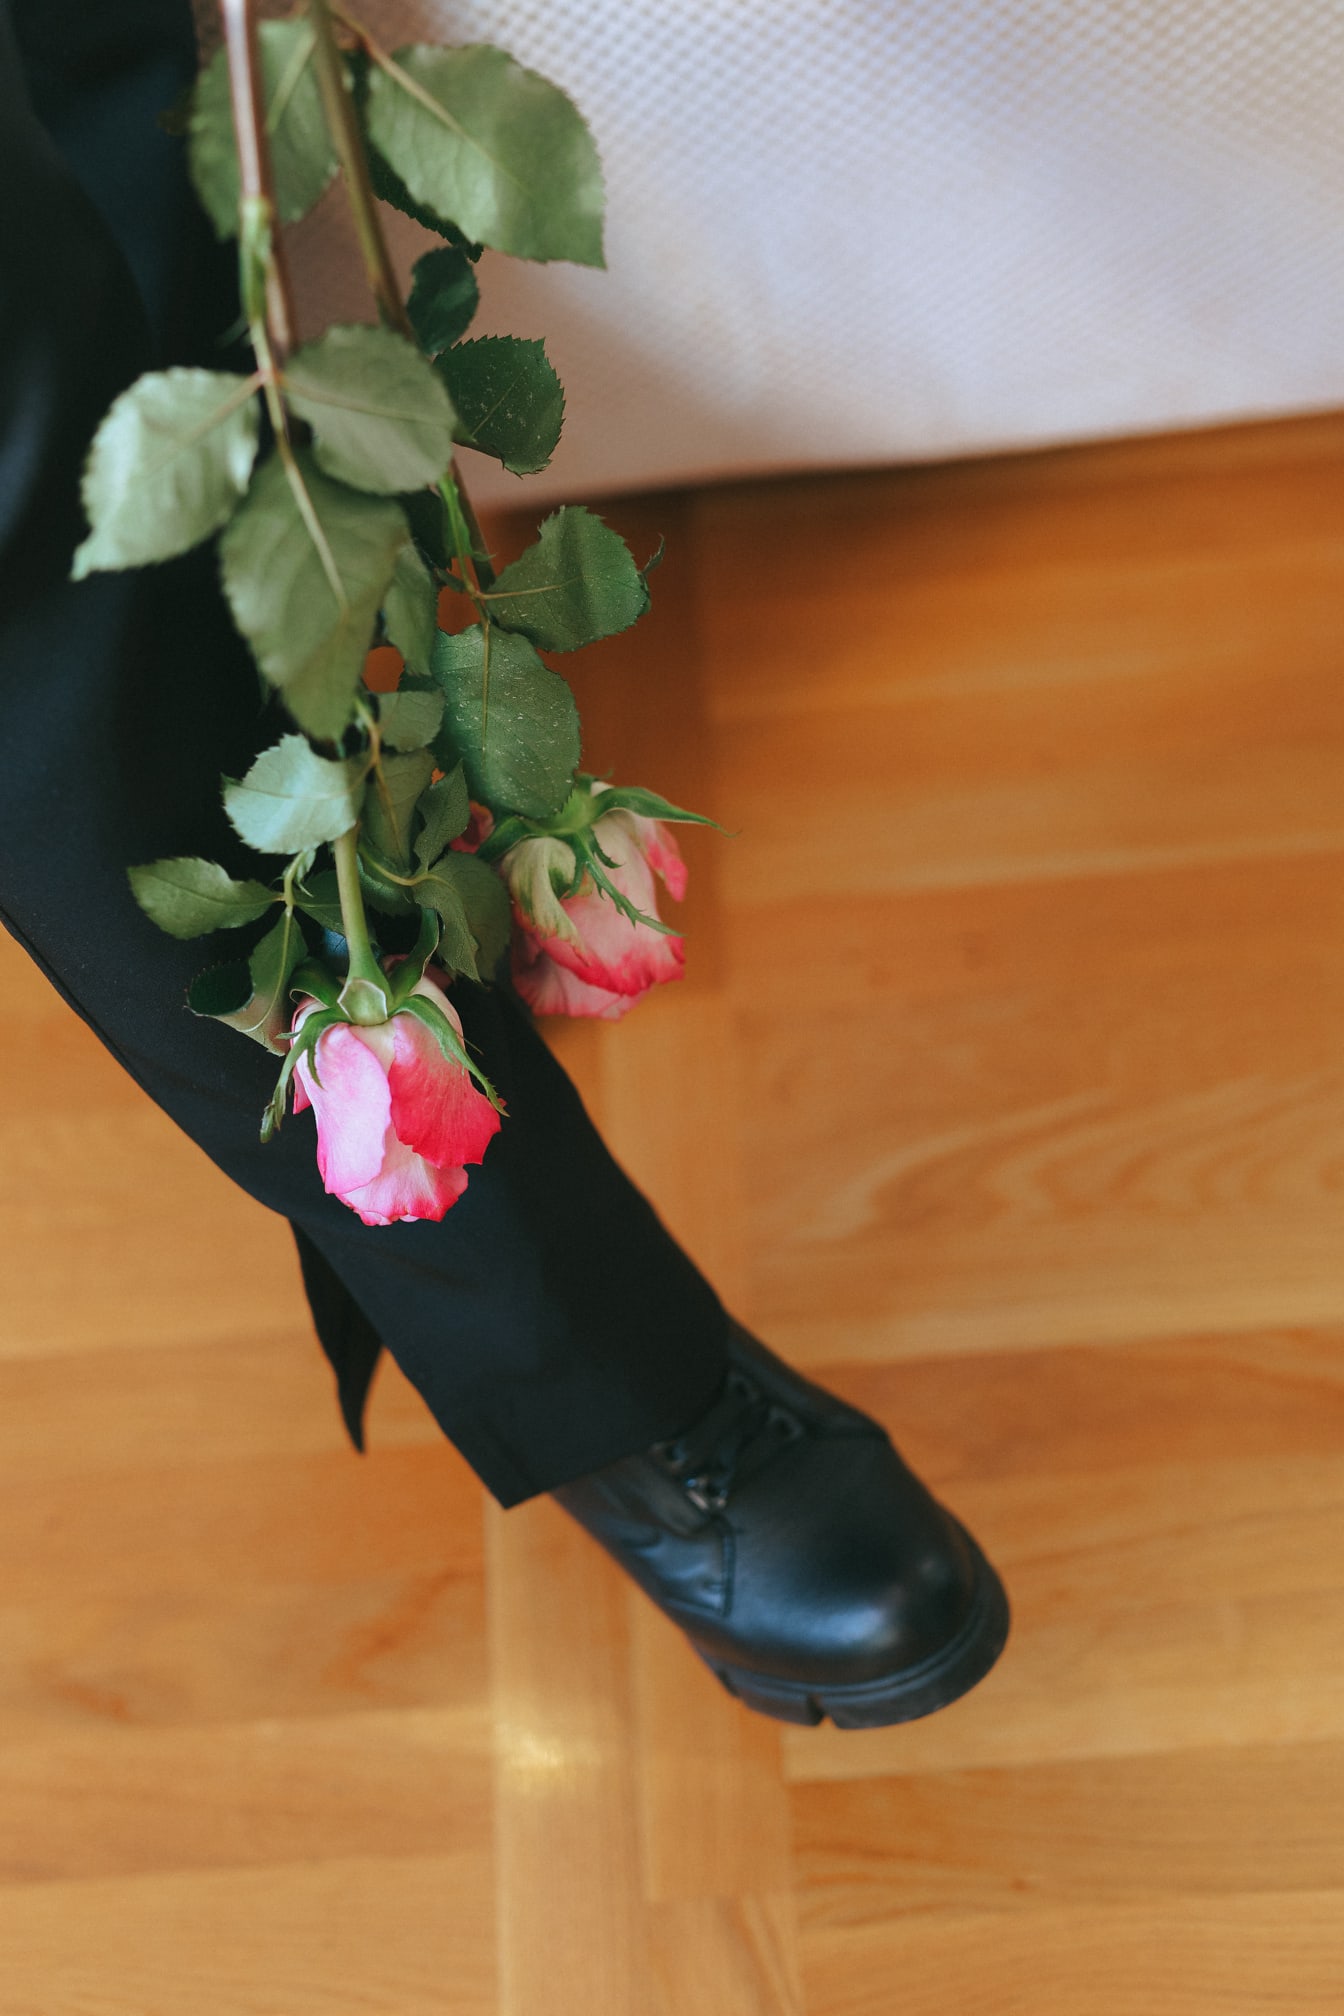 人的腿与一束粉红色的玫瑰